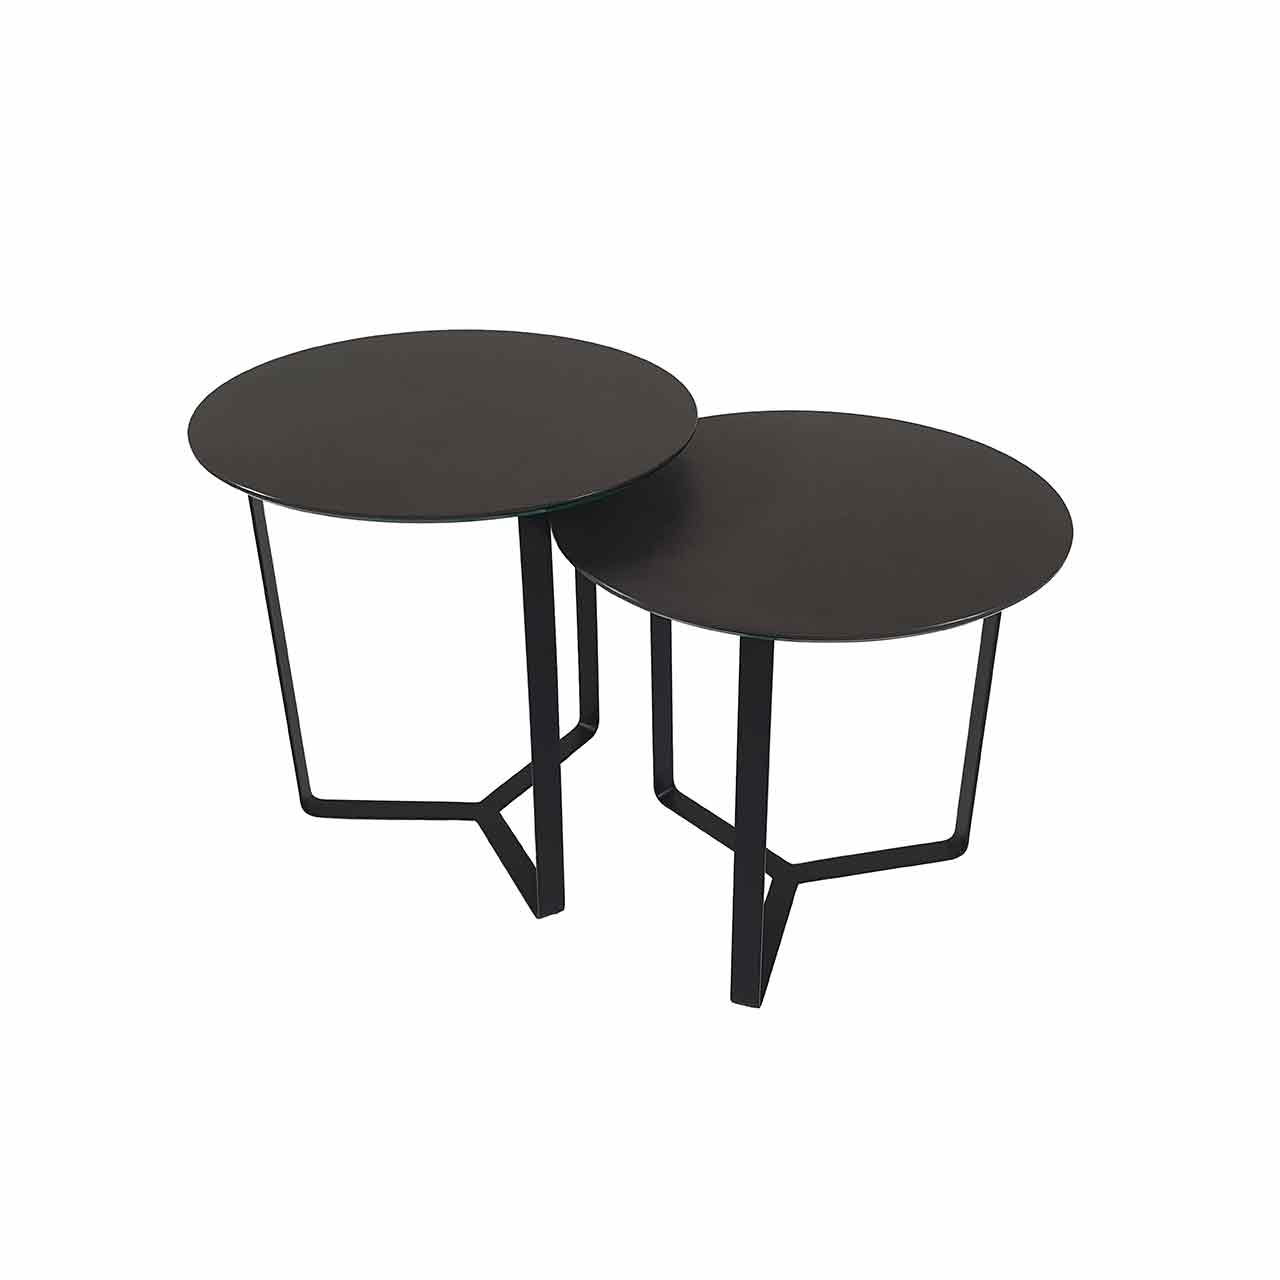 Ronald Schmitt – Beistelltisch Tondo K 350 | Tischplatte Keramik Zement montana, Gestell schwarz, 2-Satz-Tisch